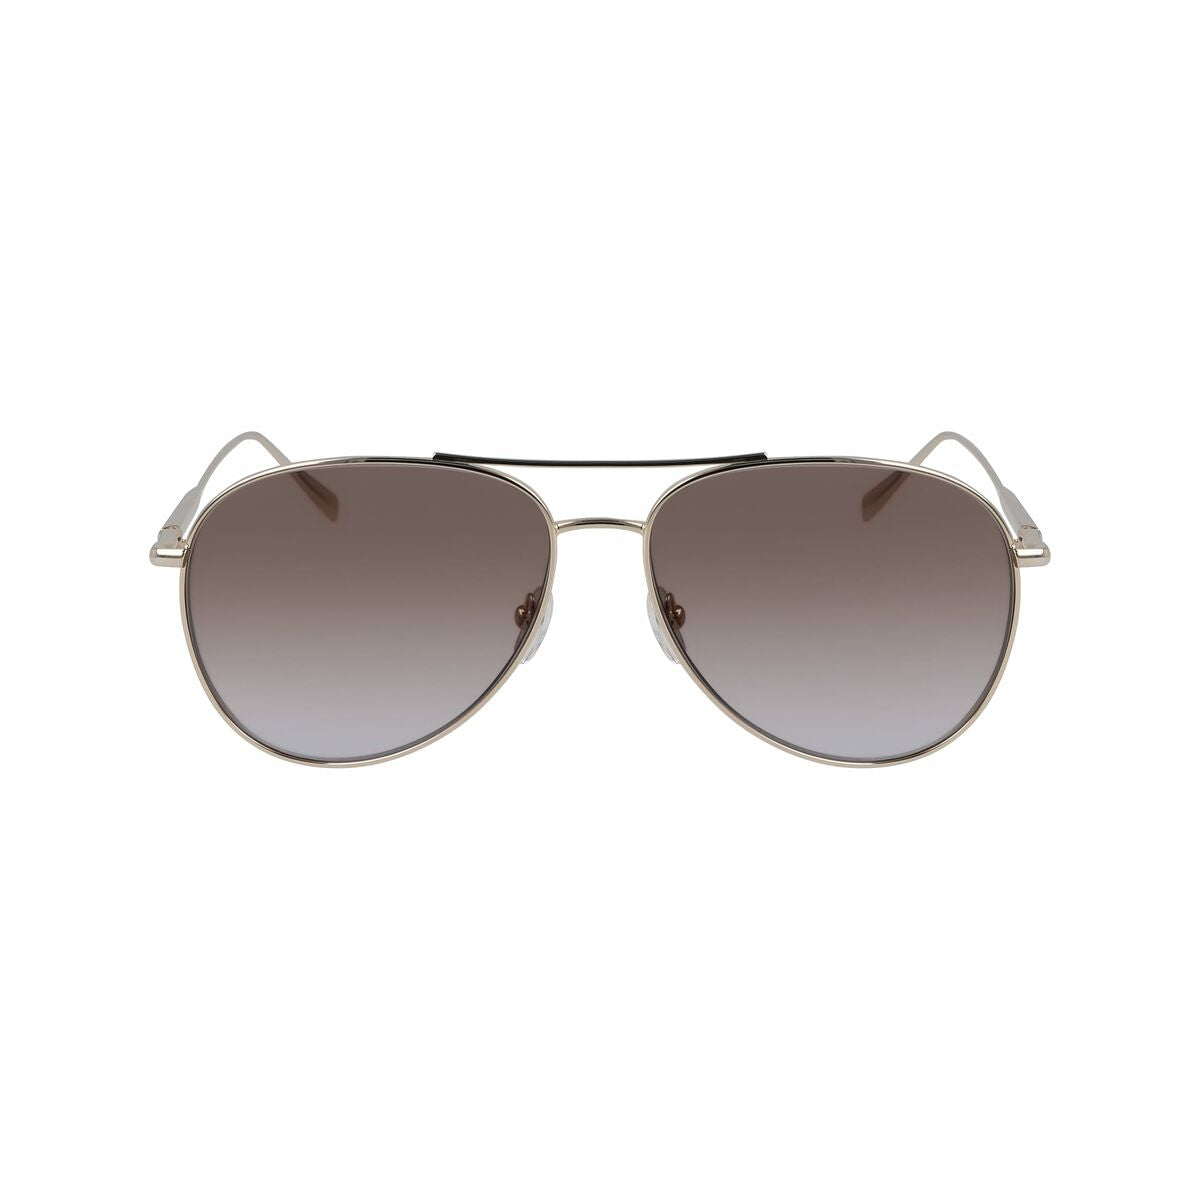 Kaufe Damensonnenbrille Longchamp LO139S-718 ø 59 mm bei AWK Flagship um € 66.00